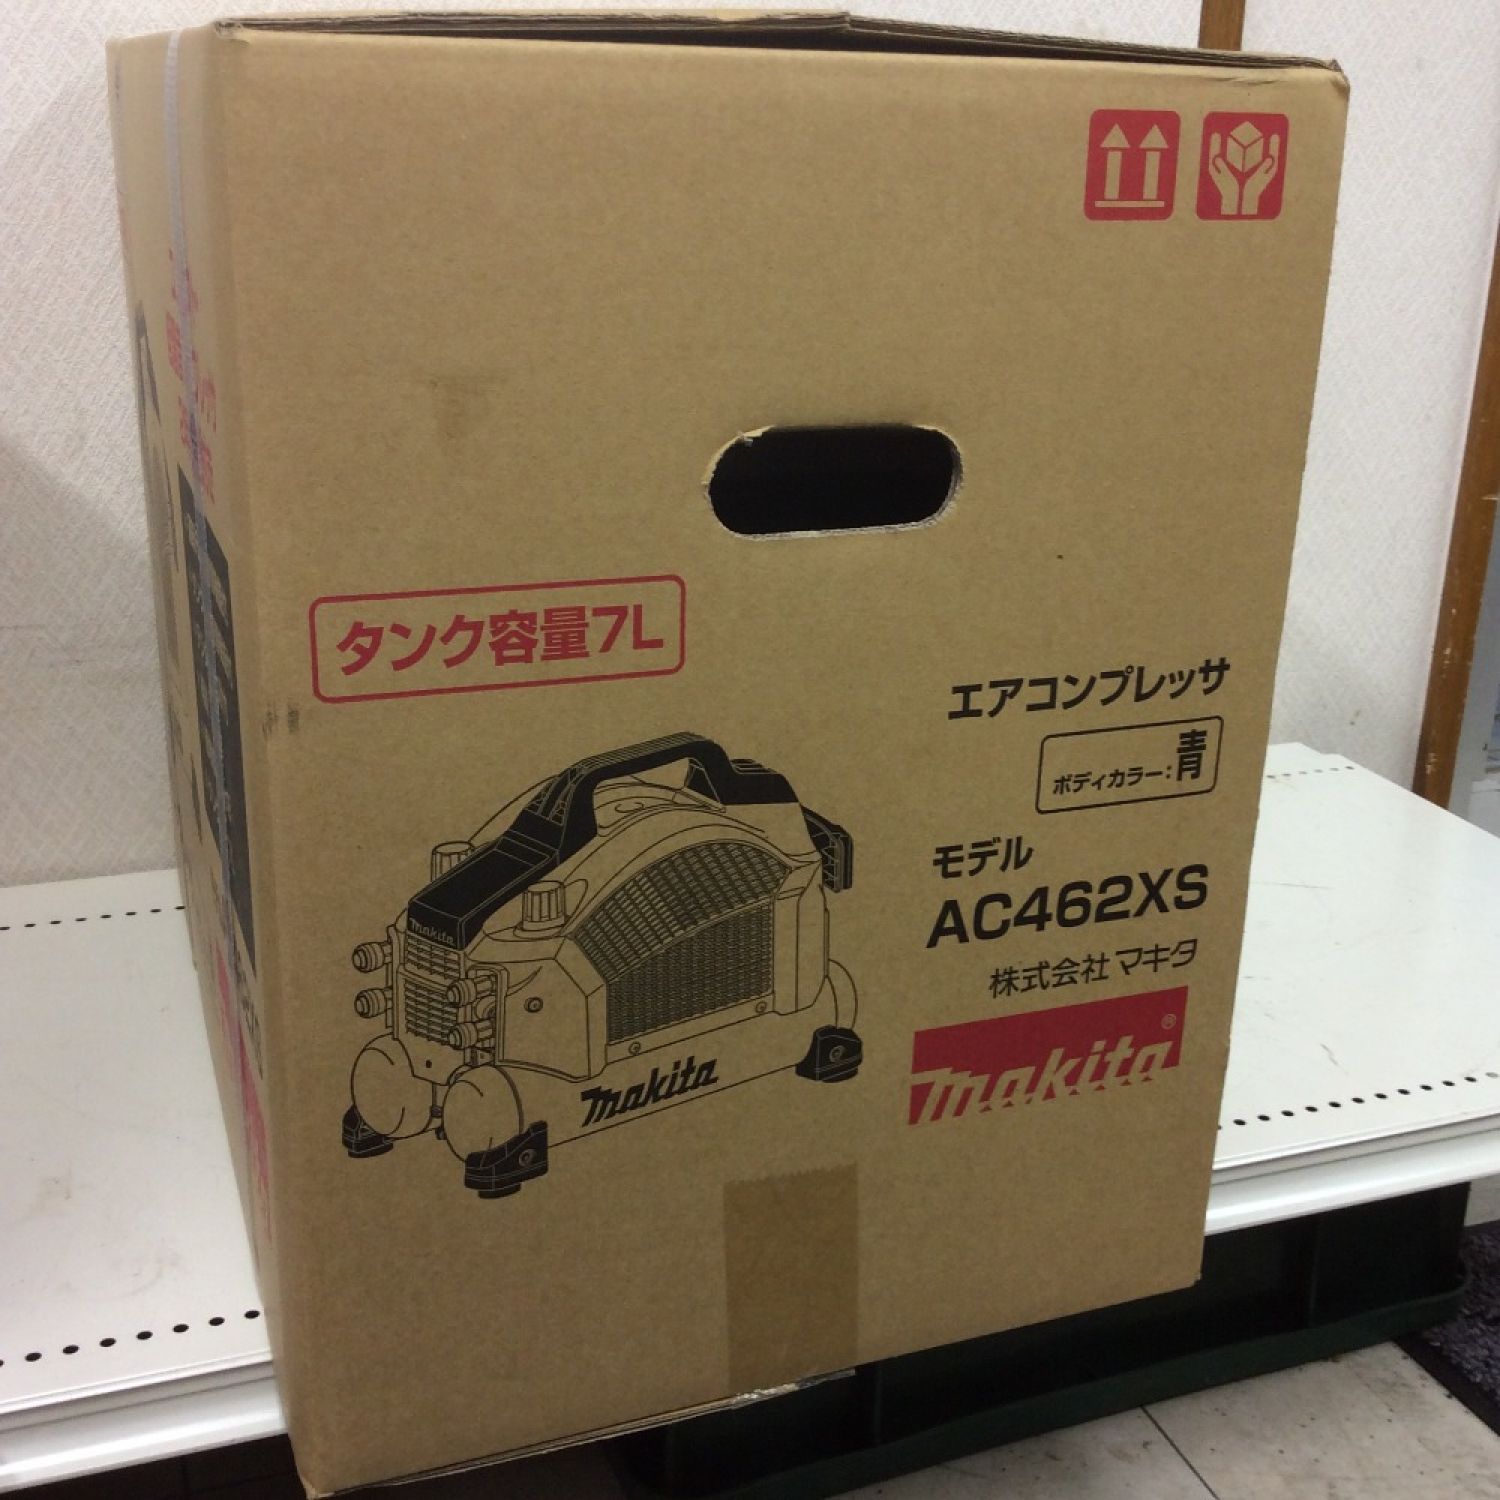 マキタ コンプレッサーAC462XS【ほぼ新品】 【テレビで話題】 namaste